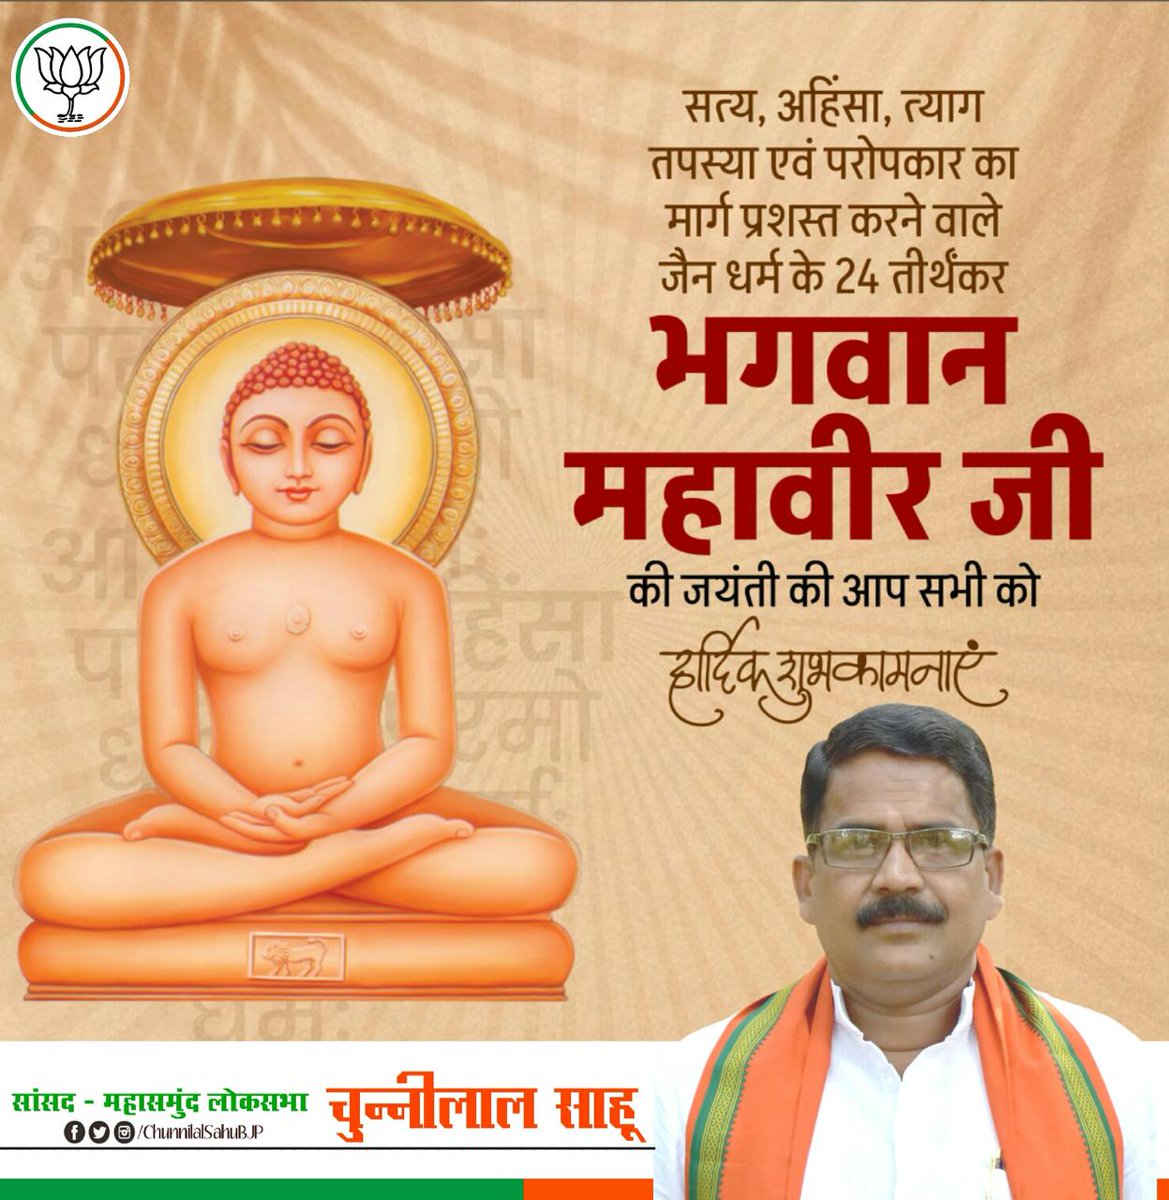 भगवान महावीर की जयंती पर आप सभी को हार्दिक शुभकामनाएं। #MahavirJayanti2024